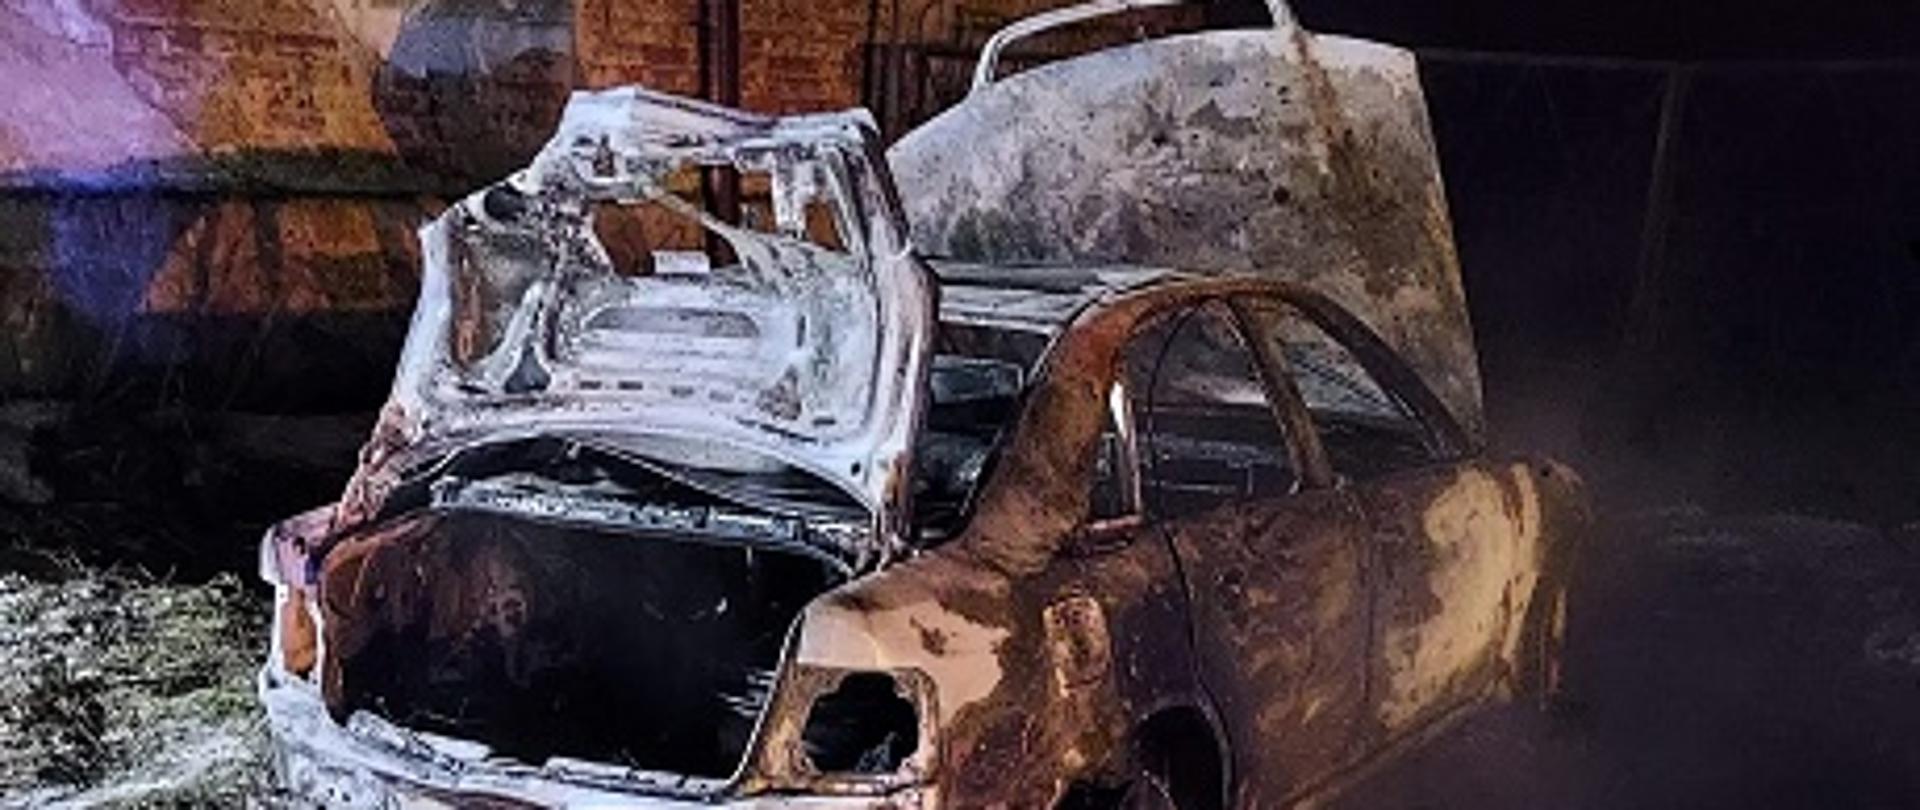 Zdjęcie przedstawia samochód osobowy marki Audi, który uległ całkowitemu spaleniu.